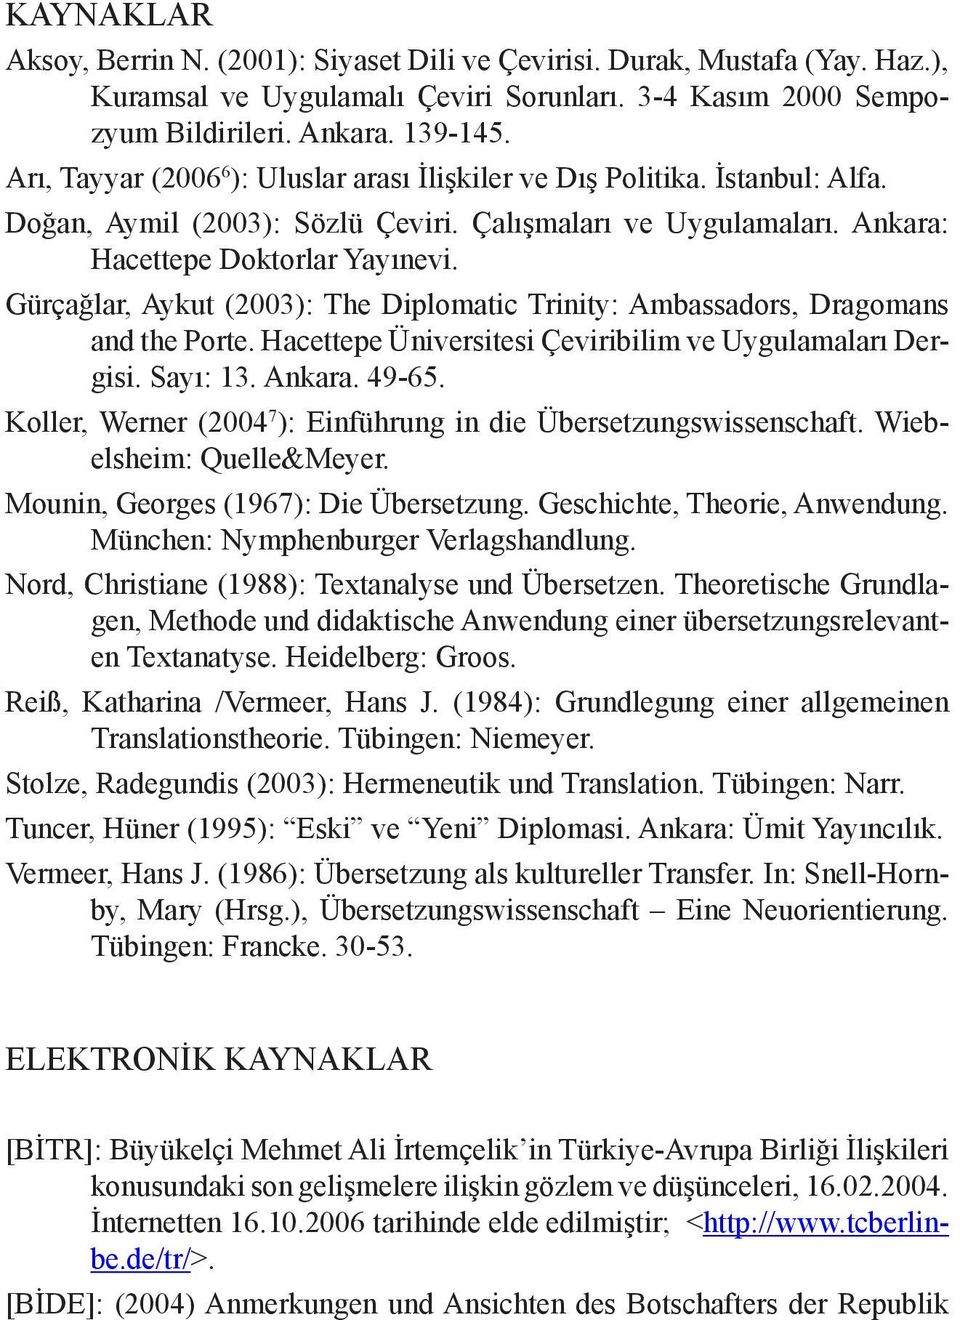 Gürçağlar, Aykut (2003): The Diplomatic Trinity: Ambassadors, Dragomans and the Porte. Hacettepe Üniversitesi Çeviribilim ve Uygulamaları Dergisi. Sayı: 13. Ankara. 49-65.